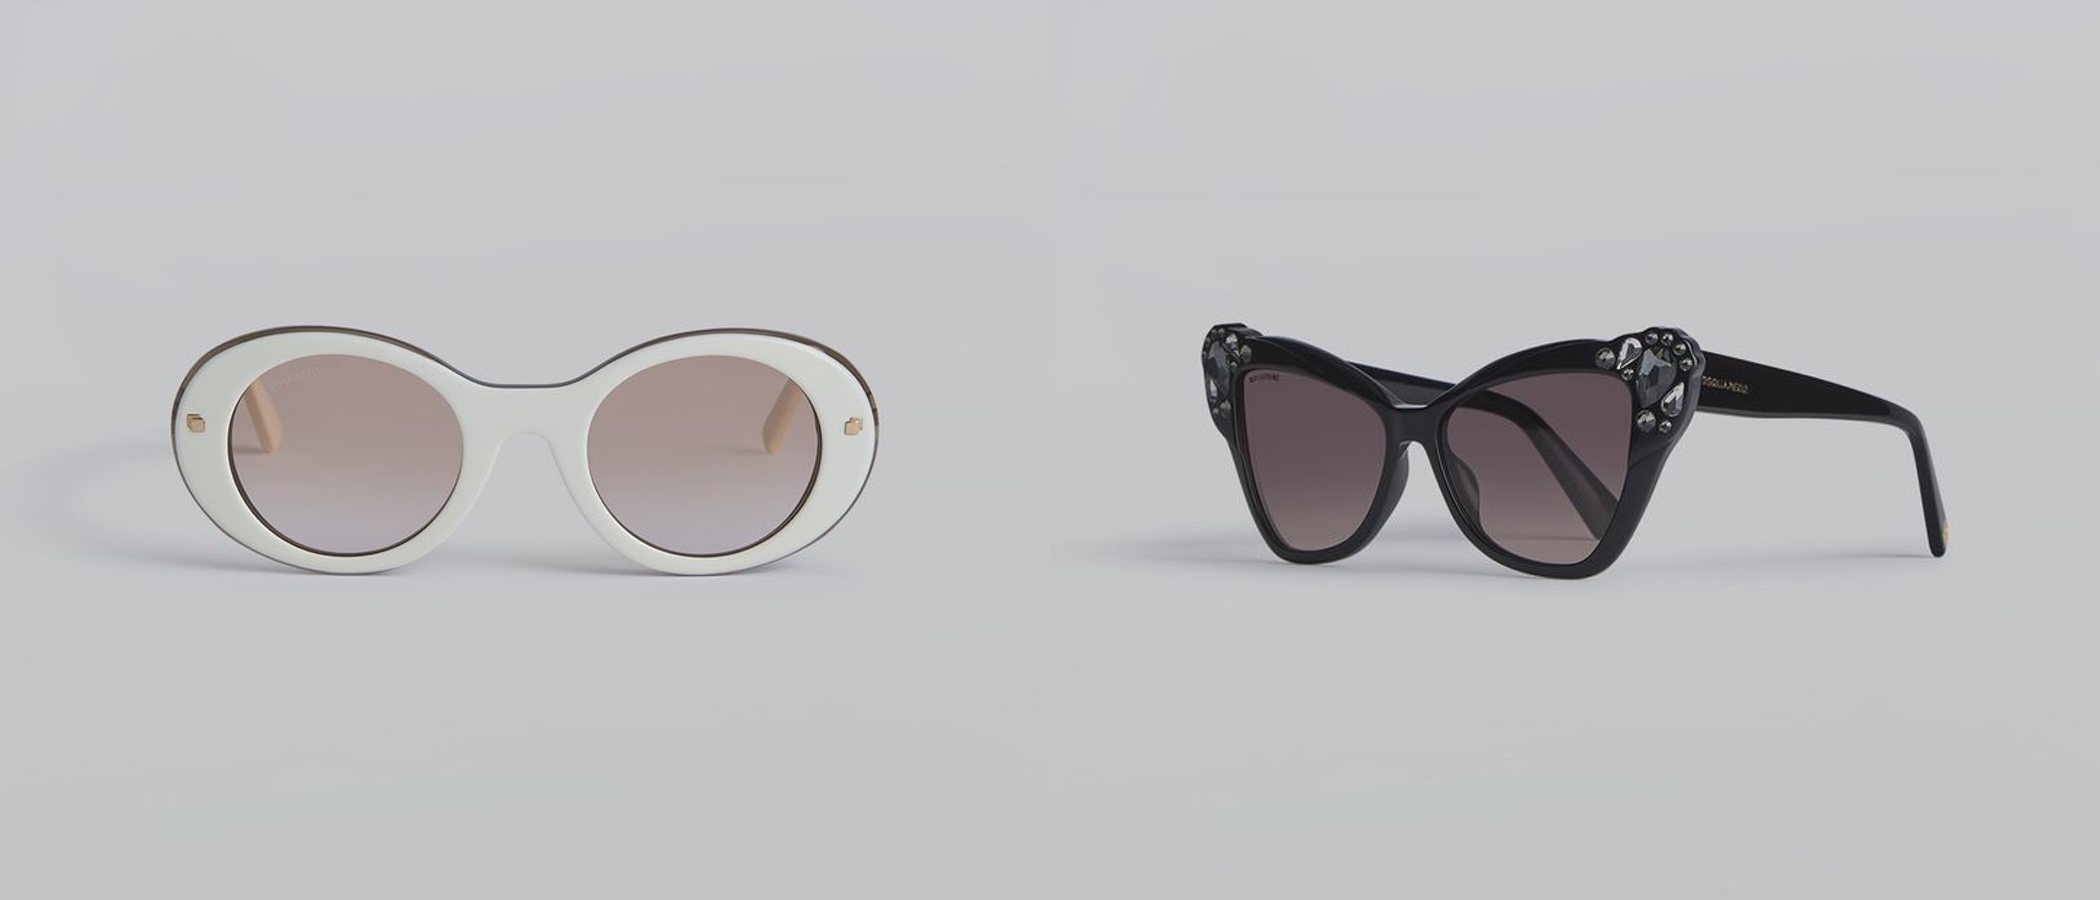 Dsquared2 son las gafas de sol que necesitas para este verano 2019